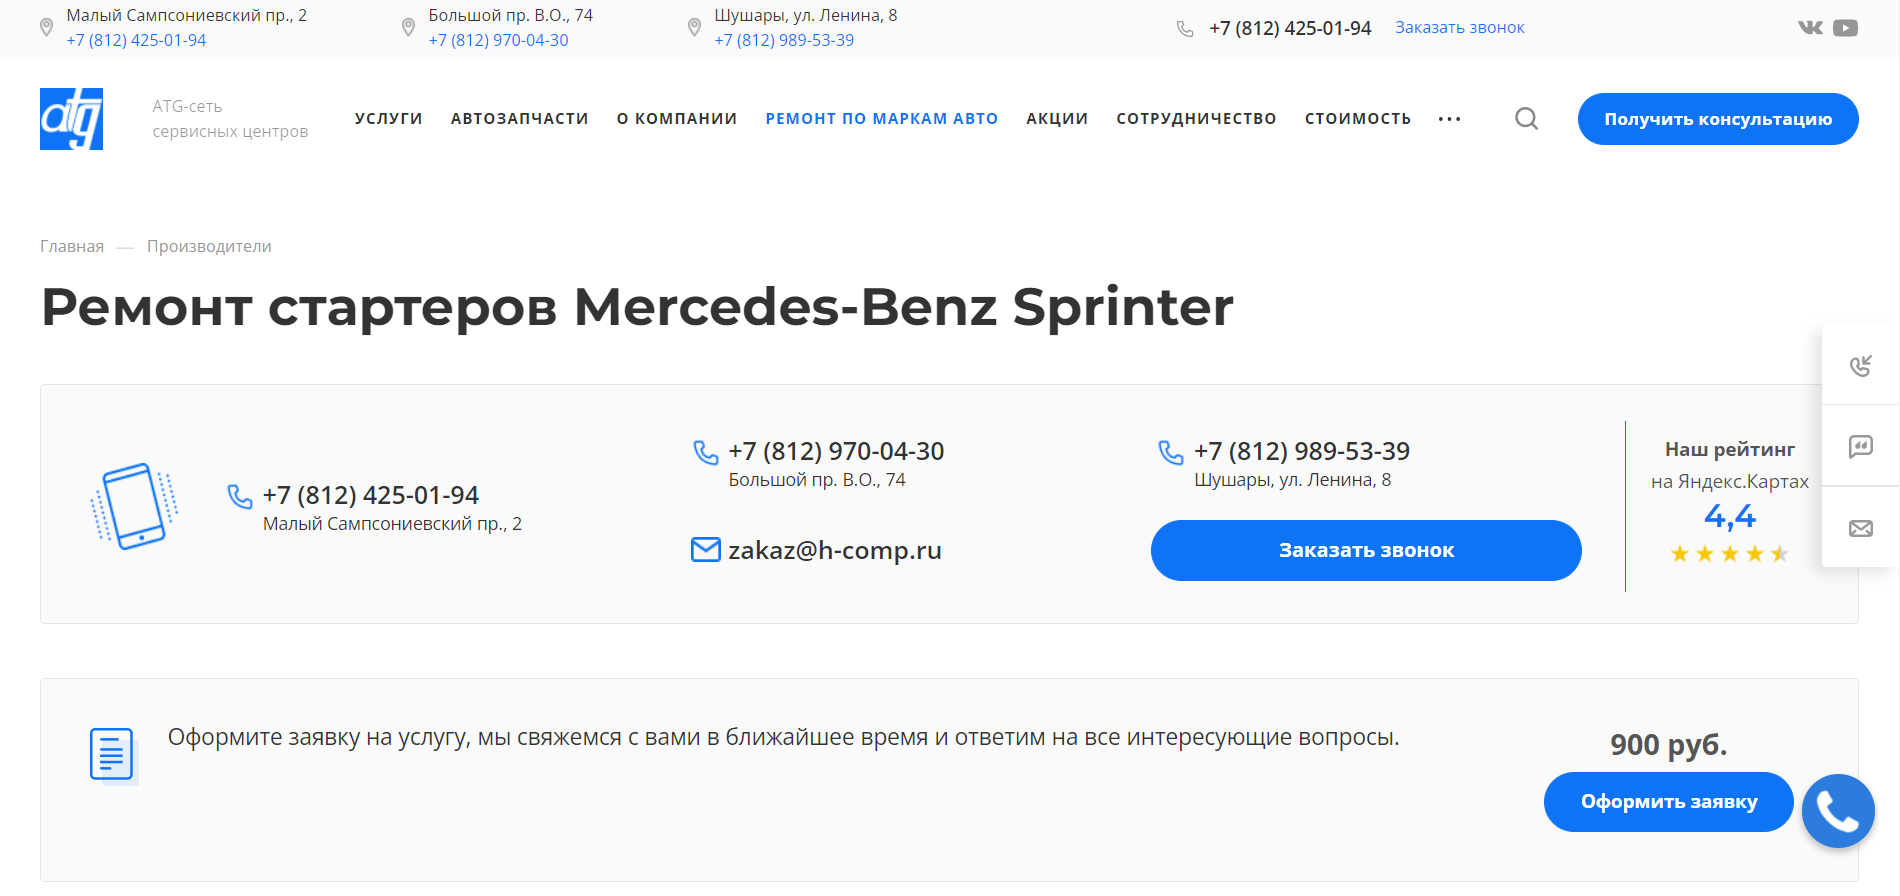 Ремонт стартеров Mercedes-Benz Sprinter